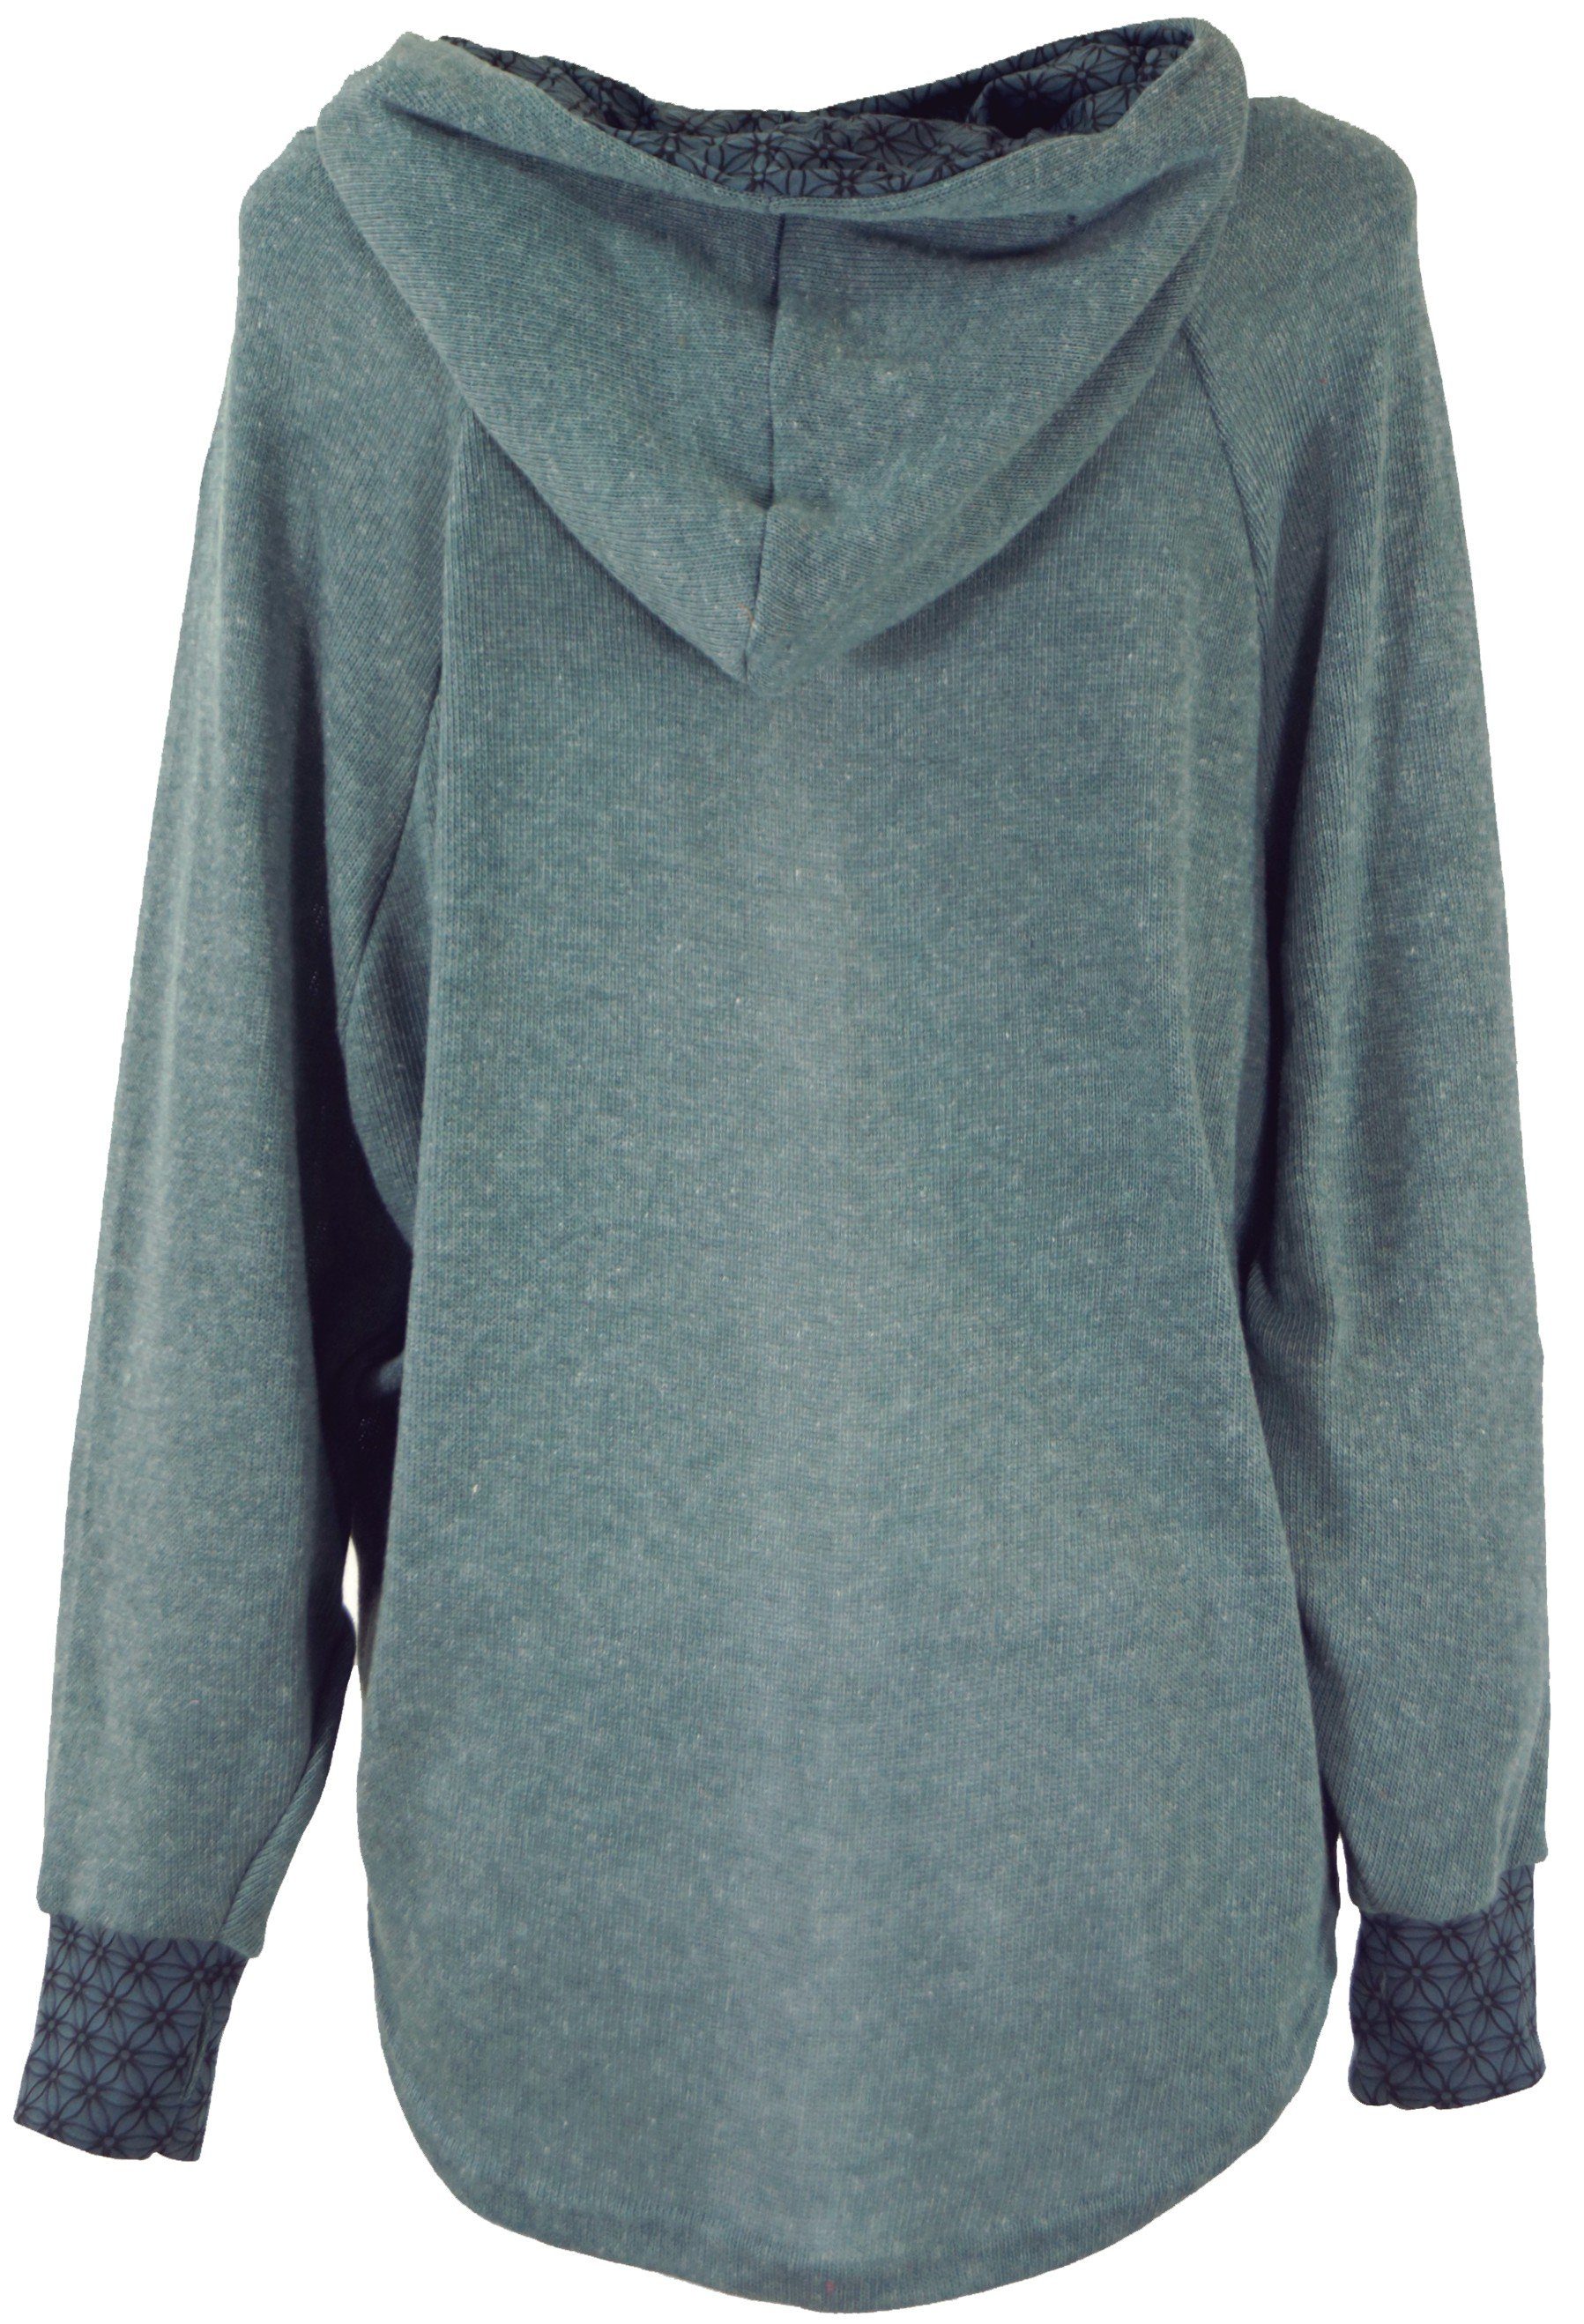 Guru-Shop Longsleeve Hoody, Sweatshirt, Pullover, Kapuzenpullover Bekleidung alternative -.. taubenblau